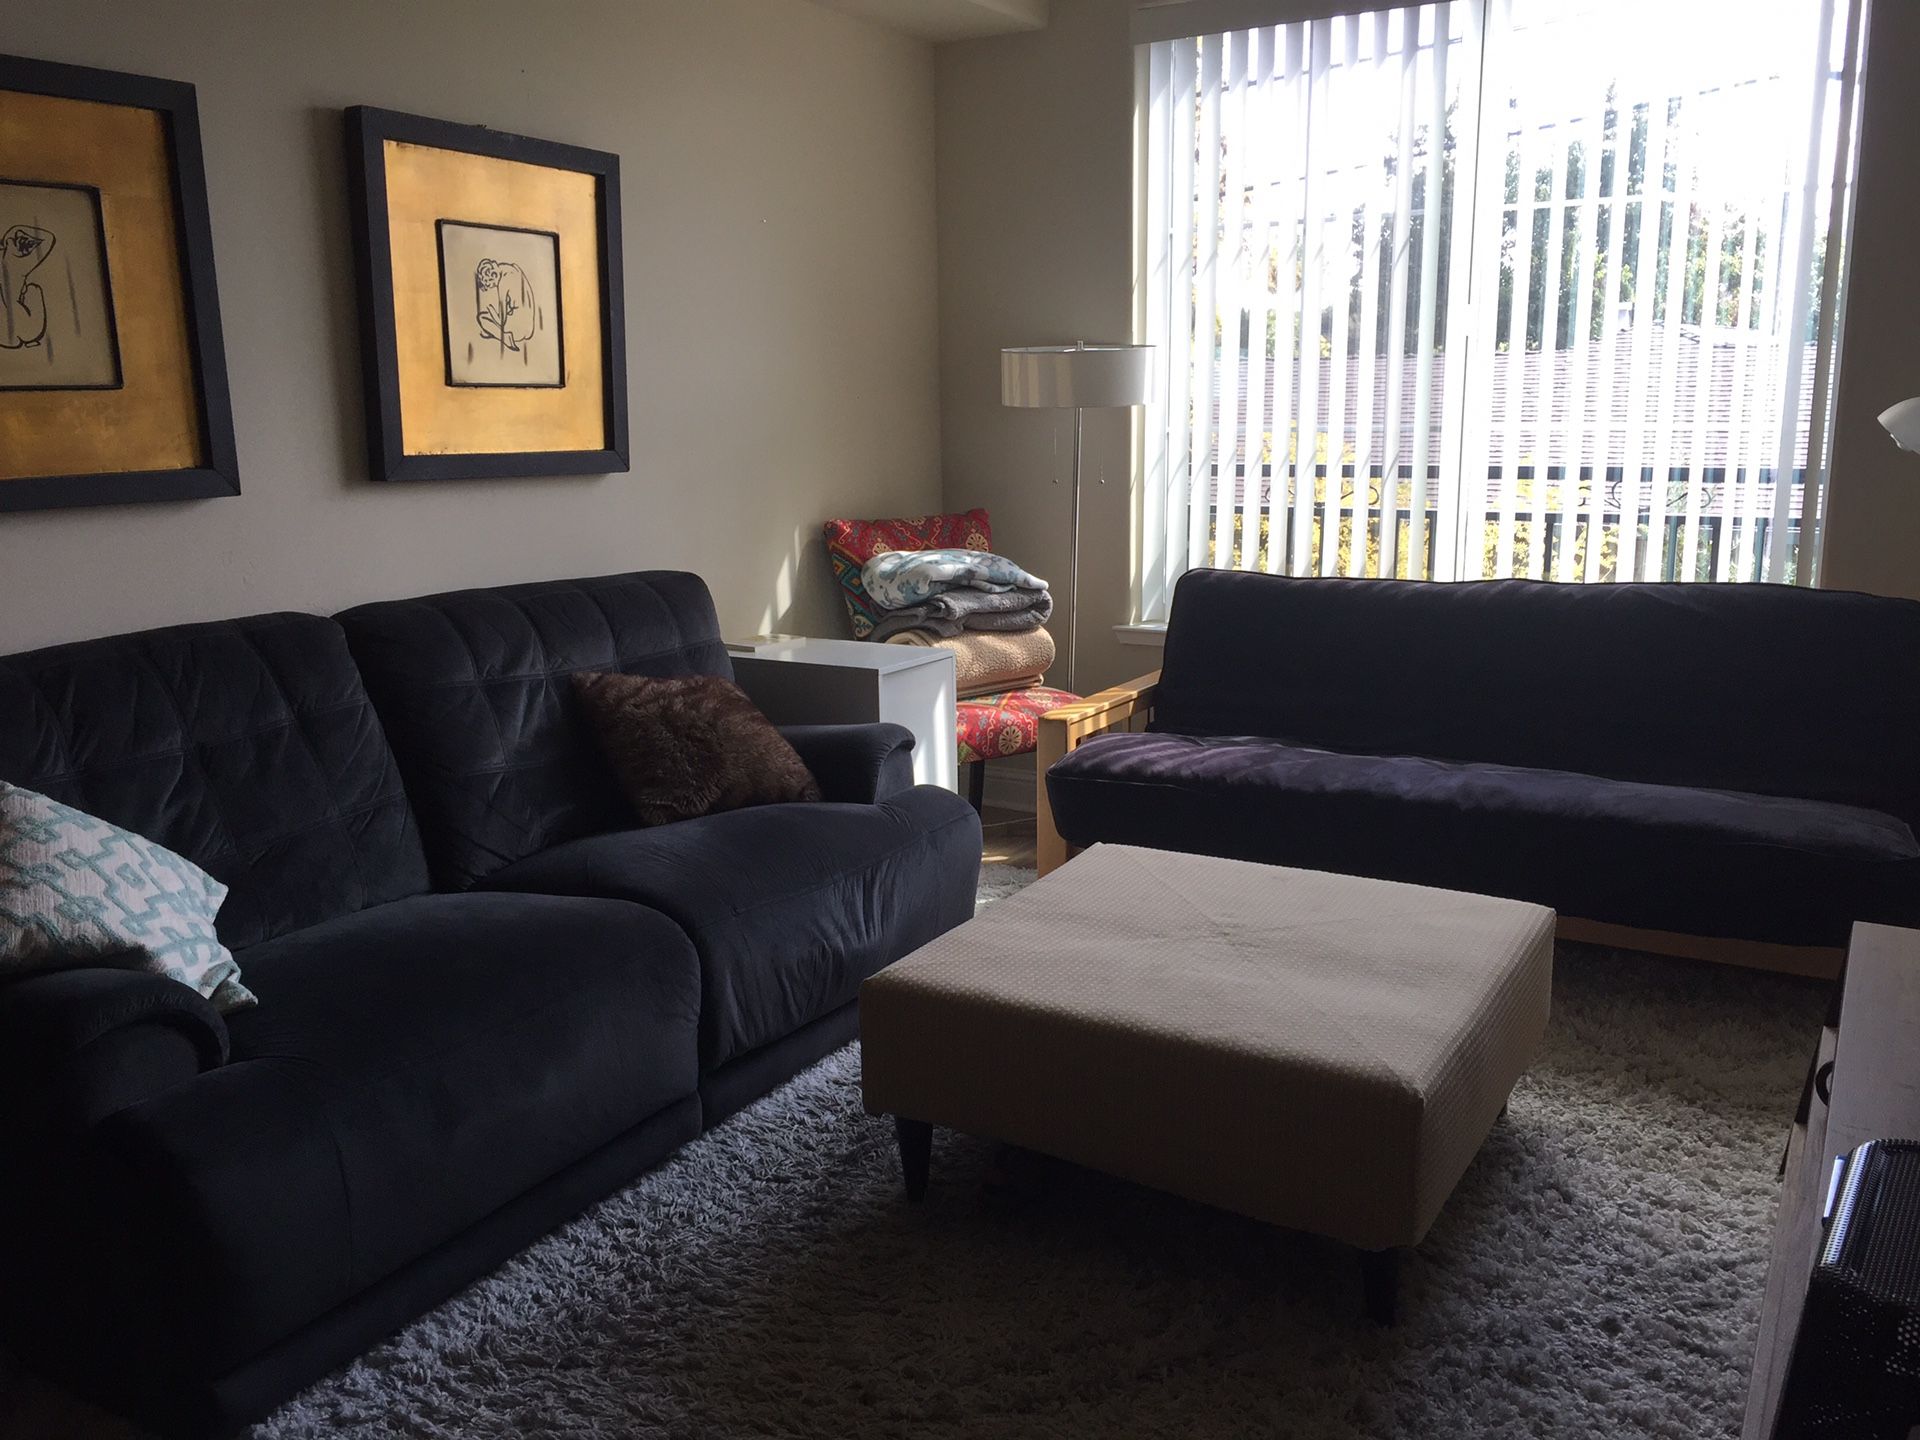 Sofa or futon